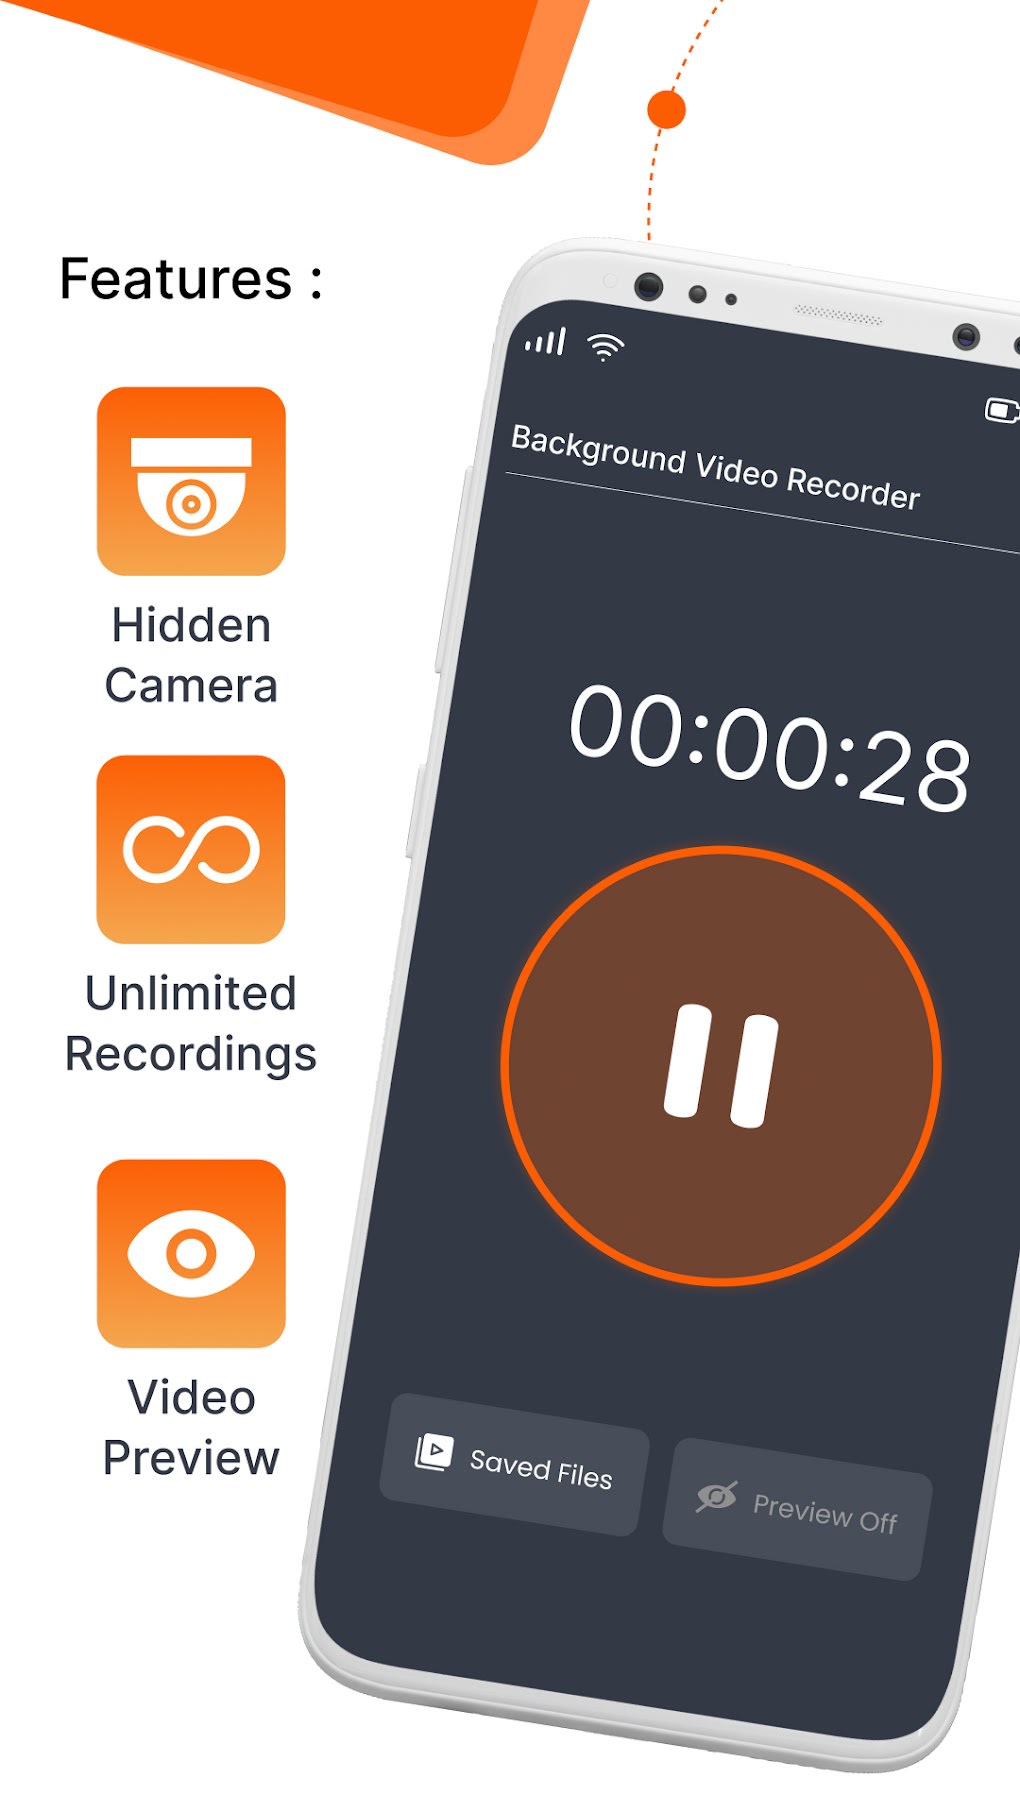 Background Video Recorder là một công cụ giúp bạn ghi lại những khoảnh khắc vô giá của cuộc sống một cách dễ dàng và tiện lợi. Nếu bạn đang tìm kiếm một ứng dụng ghi hình phù hợp cho hội nghị, lớp học hay các buổi trình diễn của mình, đây cũng chính là sự lựa chọn hoàn hảo.